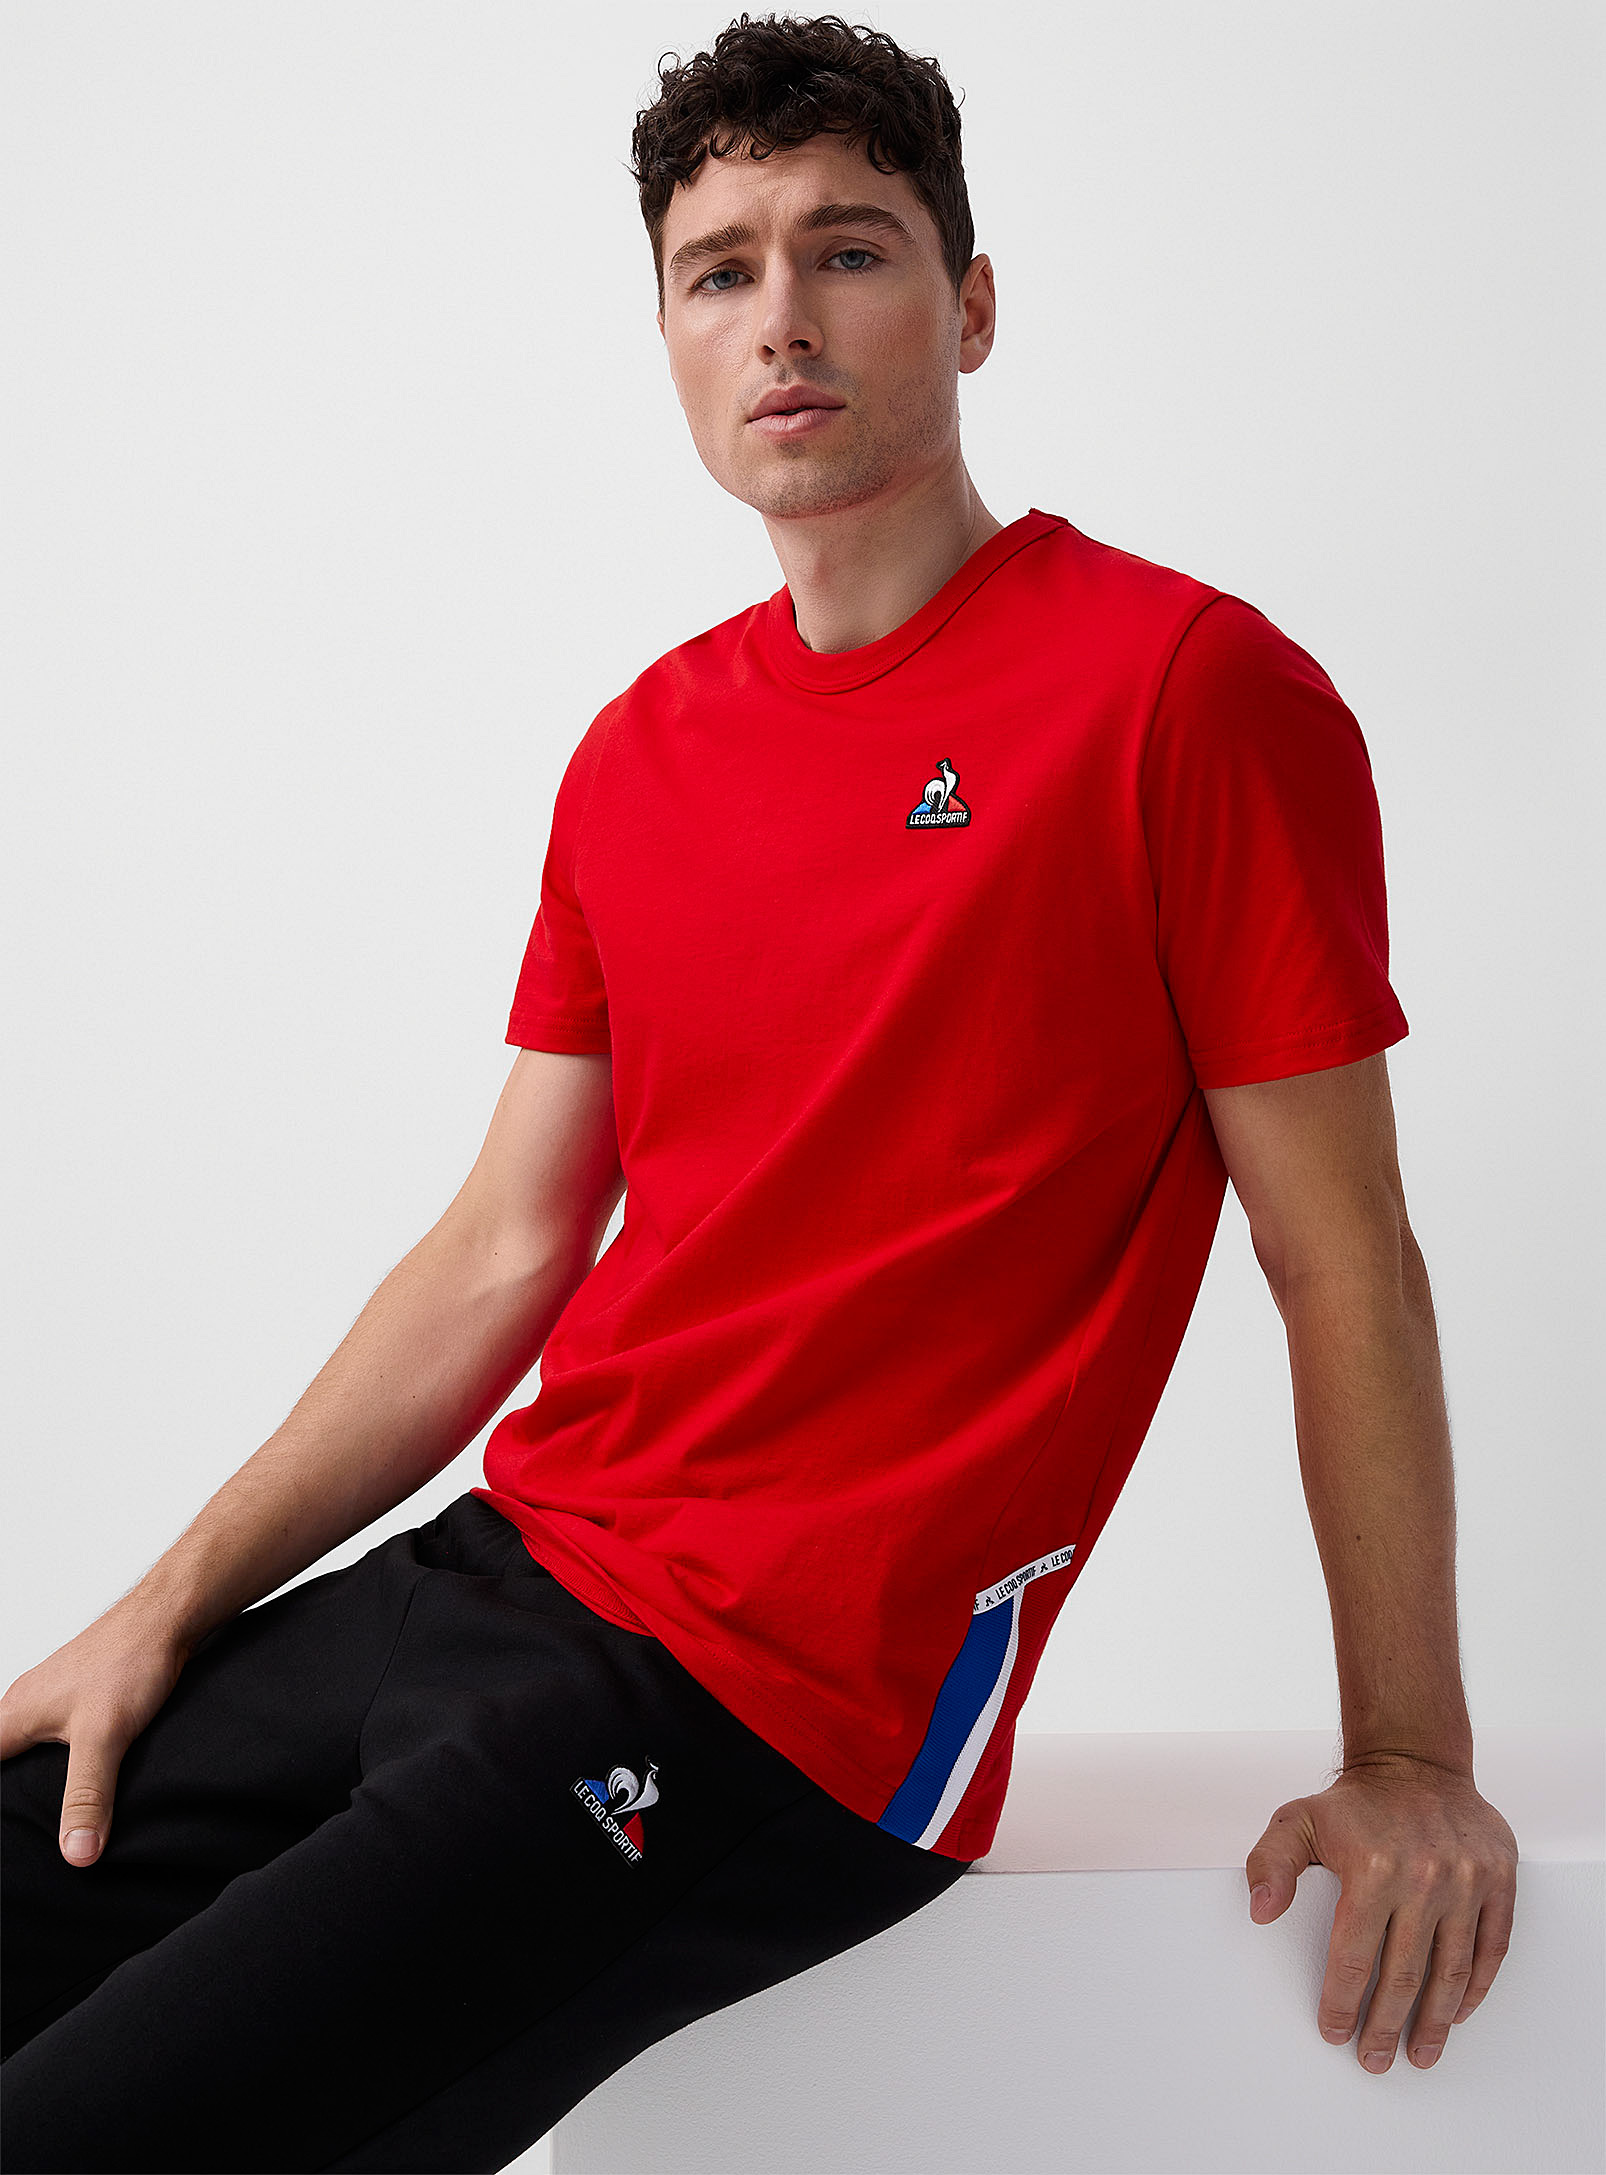 Le coq sportif - Men's Tricolour insert T-shirt